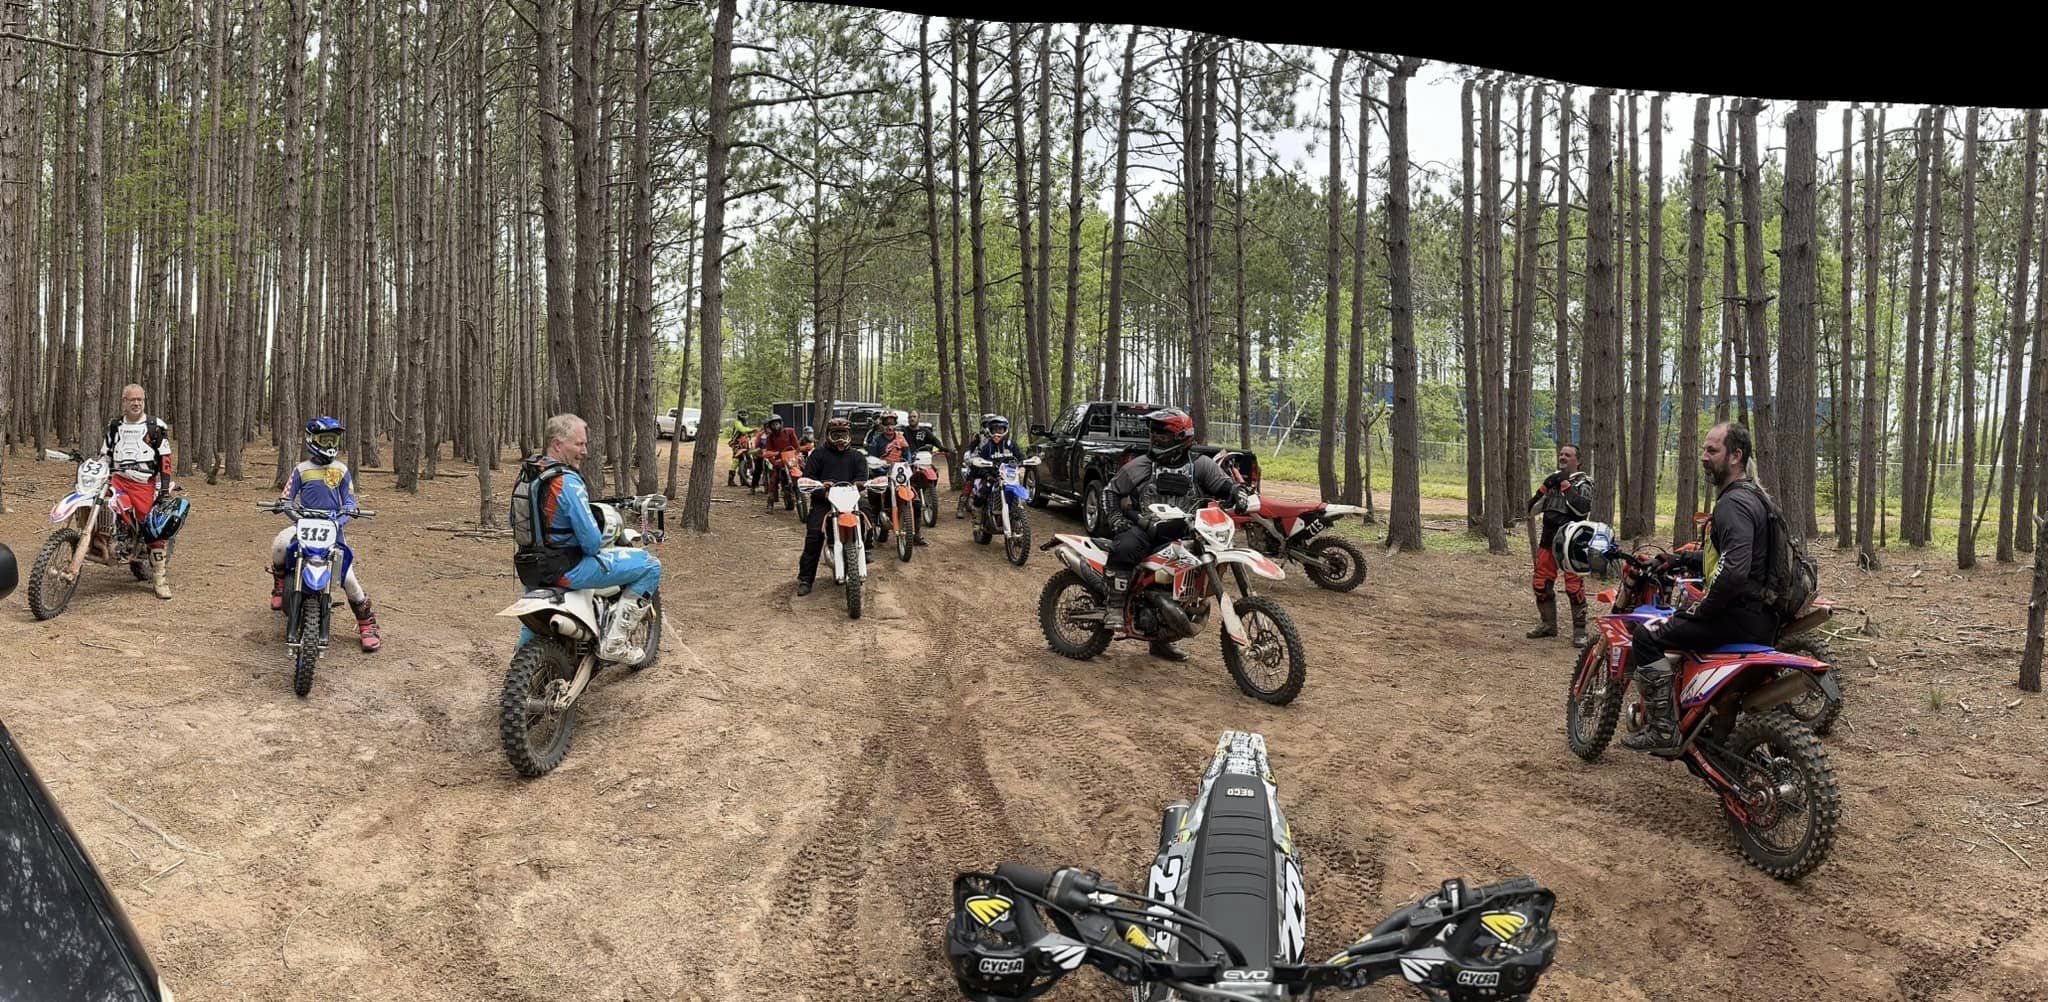 Dirt bike riders in the woods at Debert